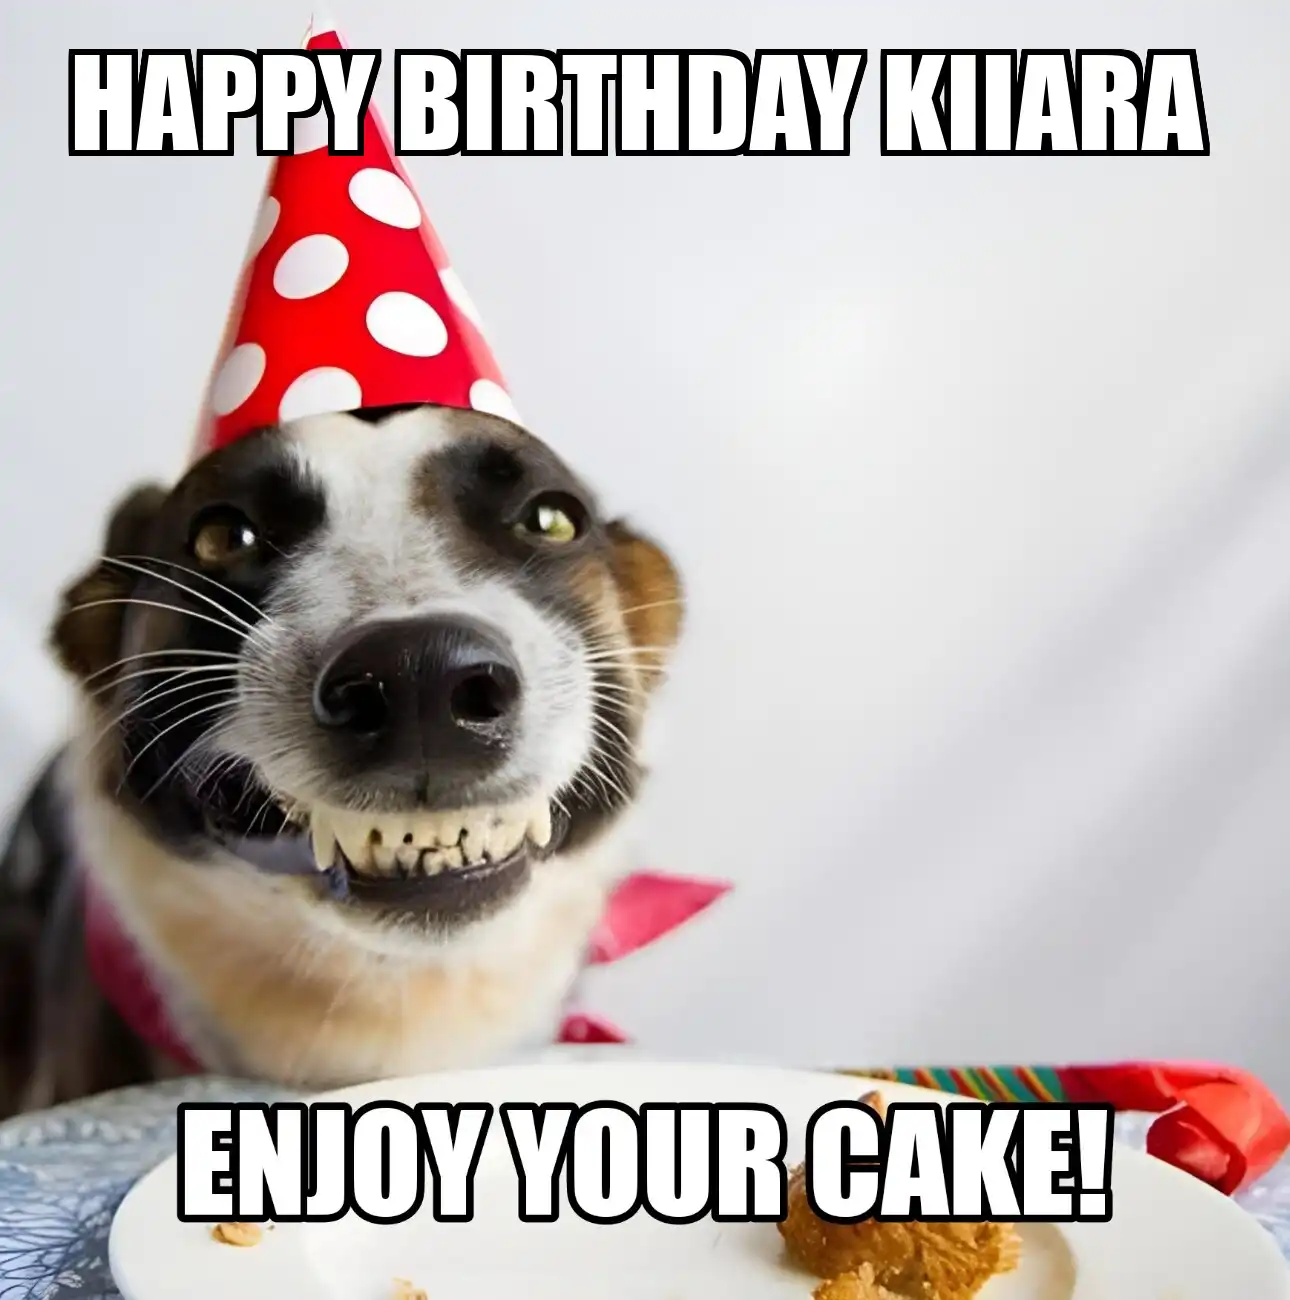 Happy Birthday Kiiara Enjoy Your Cake Dog Meme